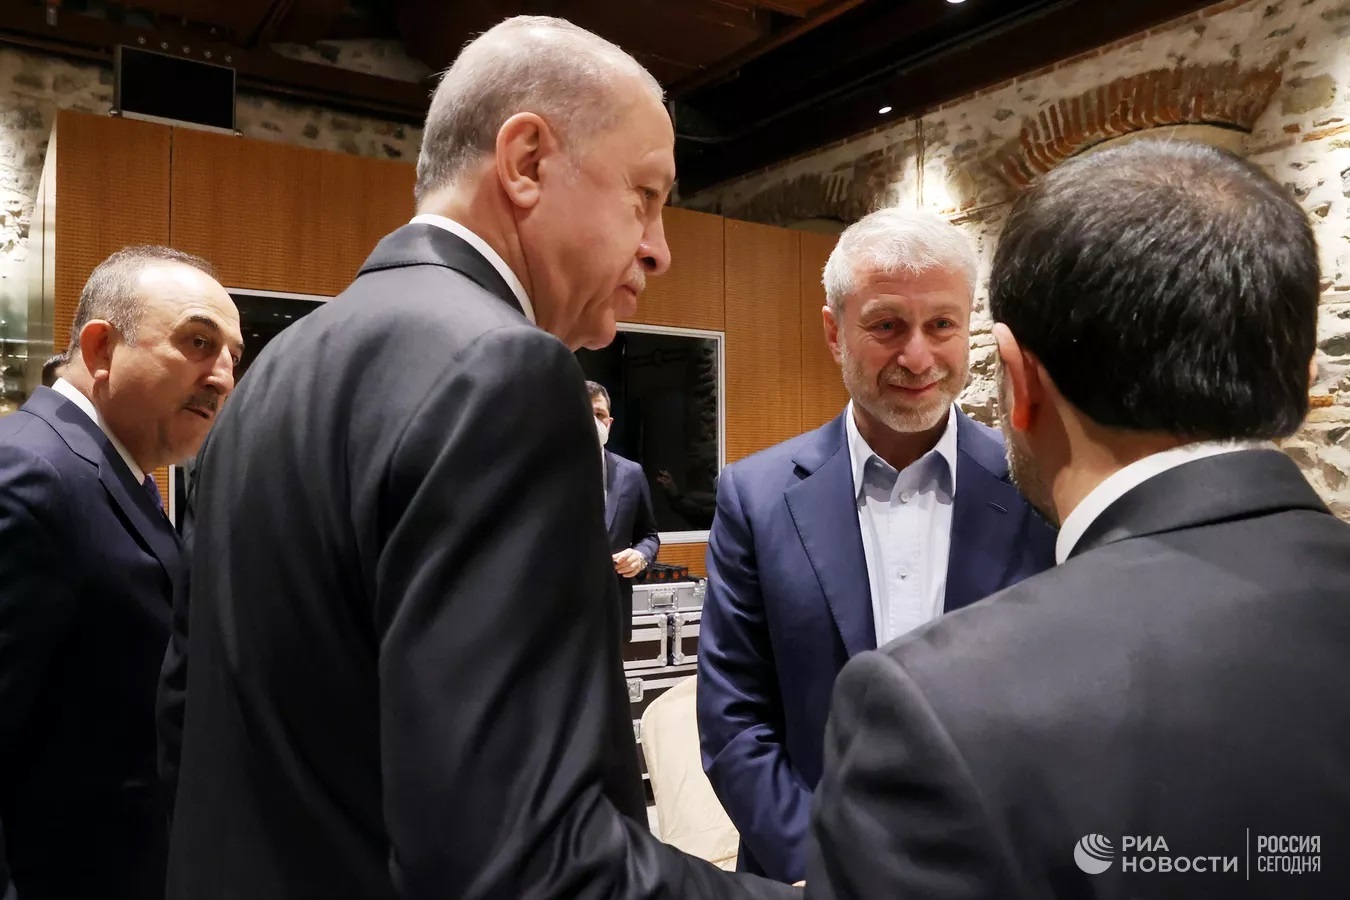 V Istanbulu se konají jednání delegací Ruska a Ukrajiny